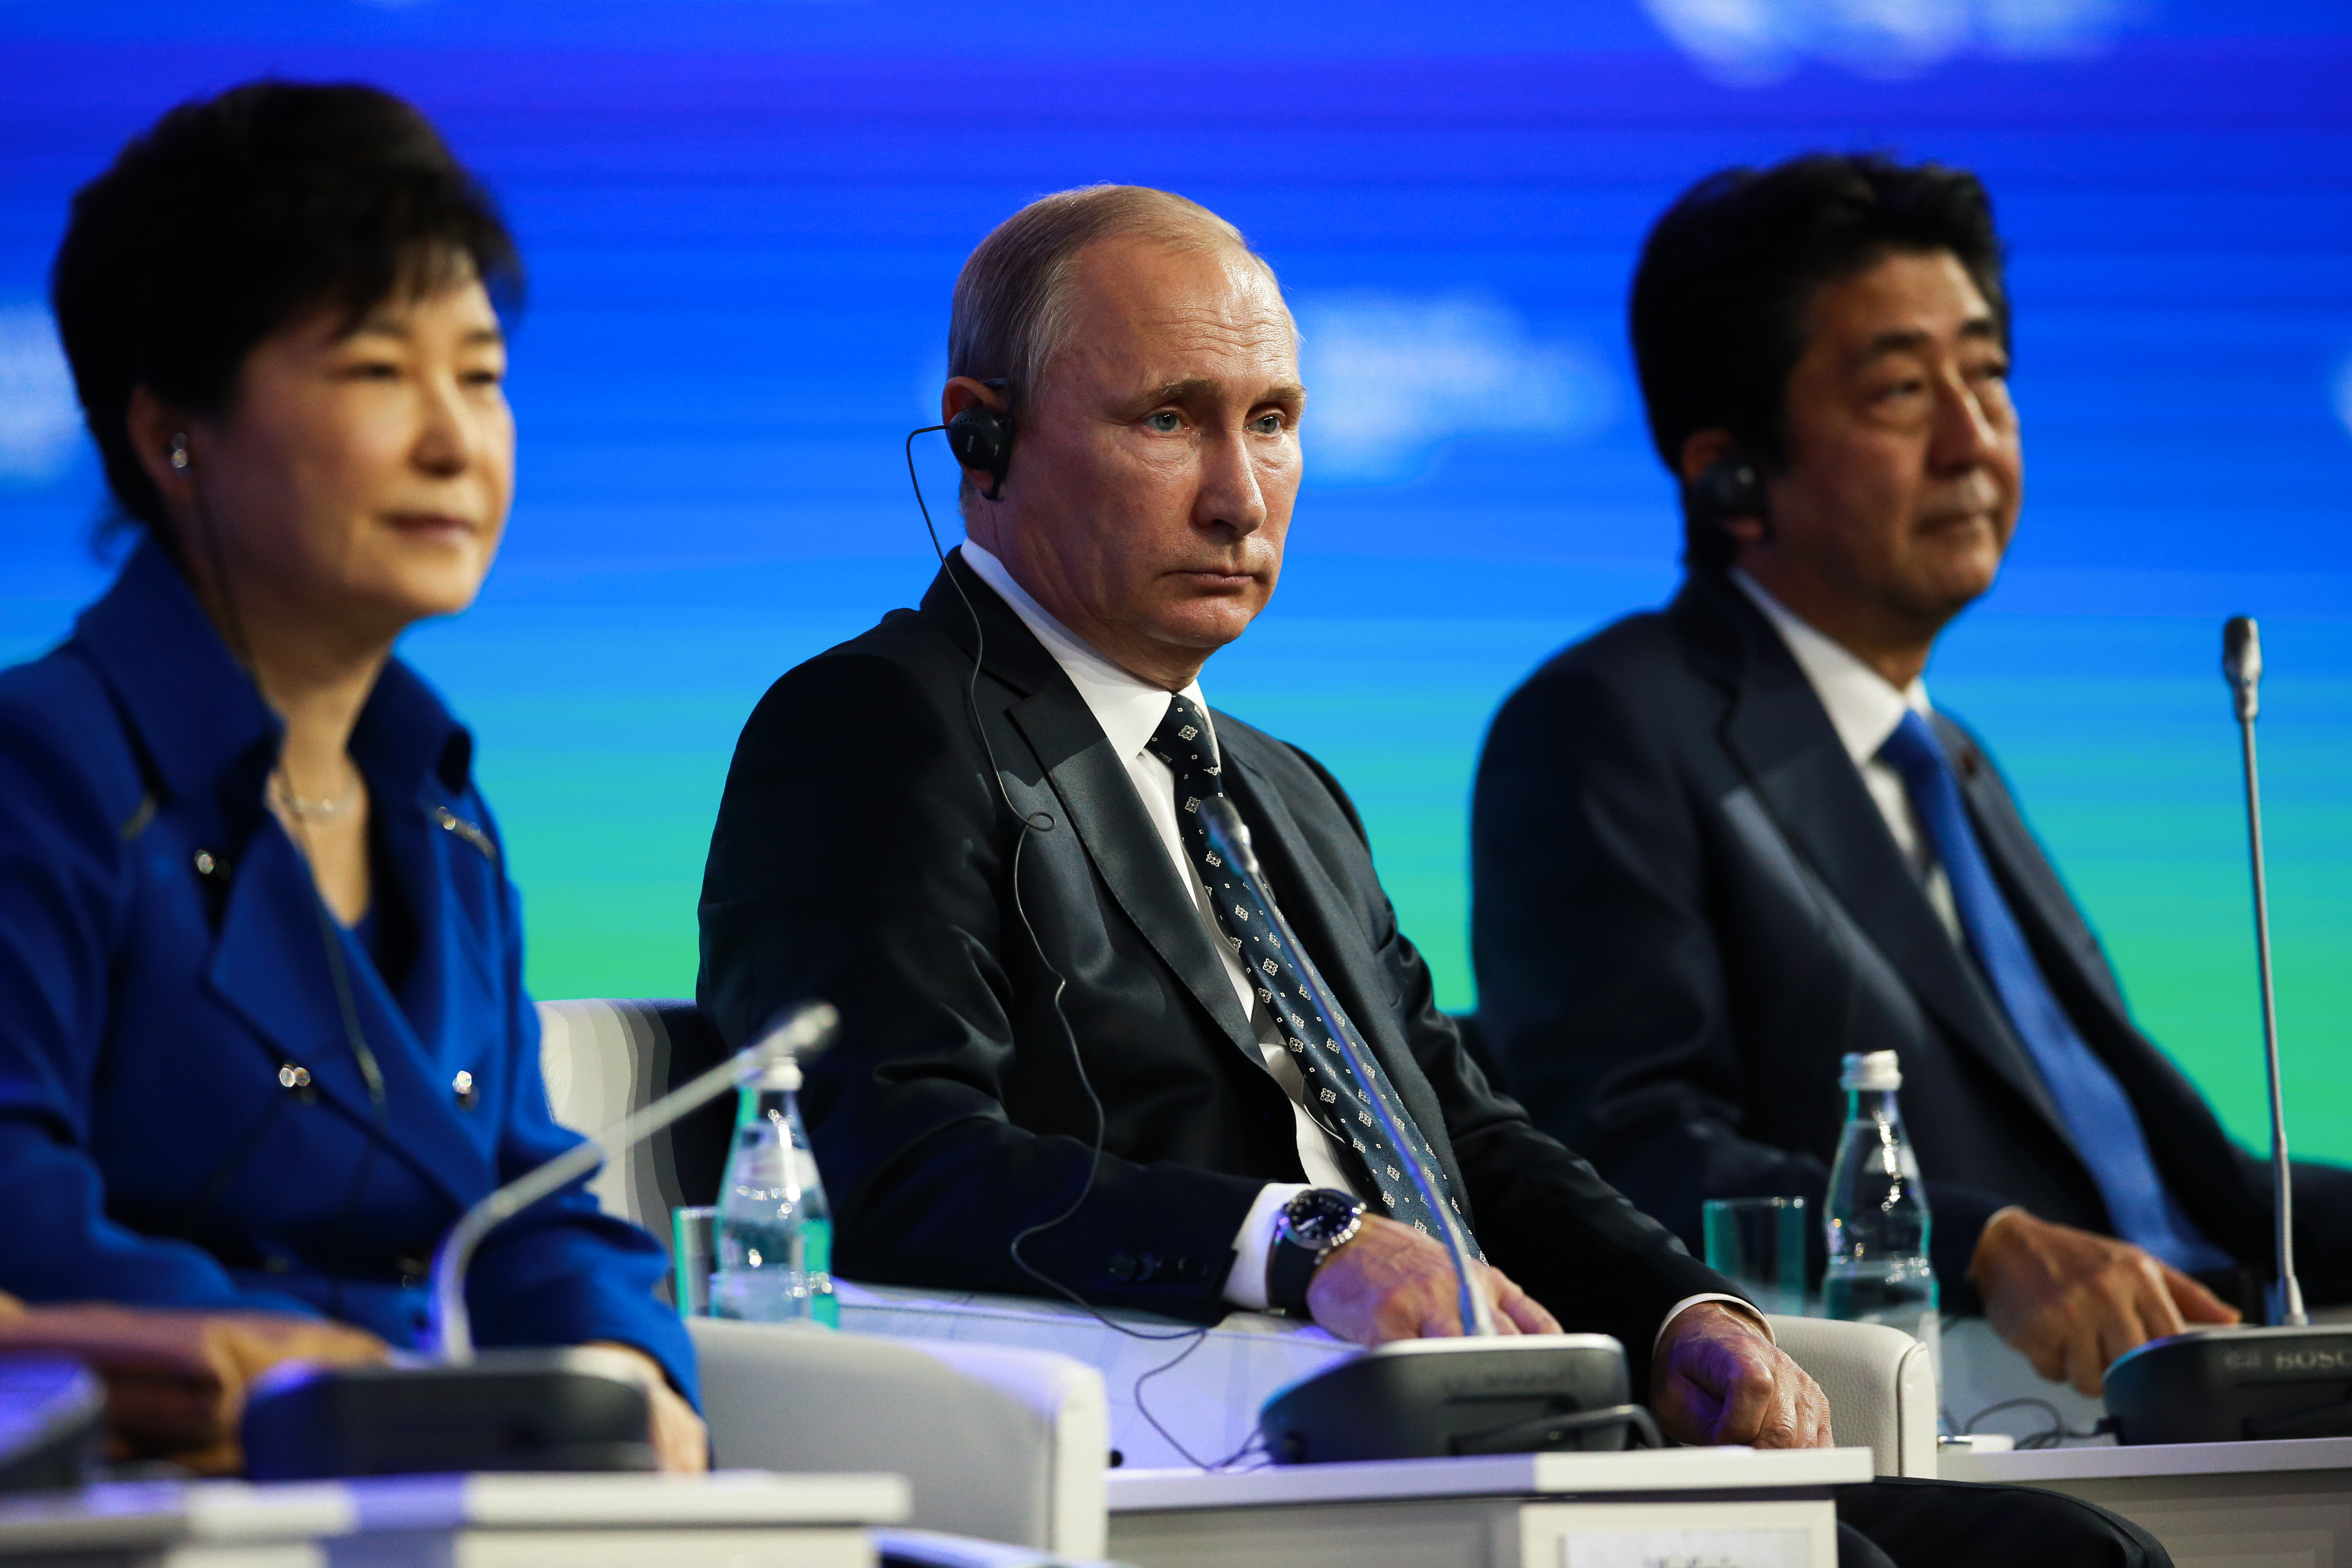 박근혜 대통령(왼쪽부터), 아베 신조 일본 총리, 러시아 블라디미르 푸틴 대통령이 9월 3일 러시아 블라디보스토크 극동연방대학에서 개최된 동방경제포럼(EEF) 전체세션에서 질문에 답하고 있는 모습.